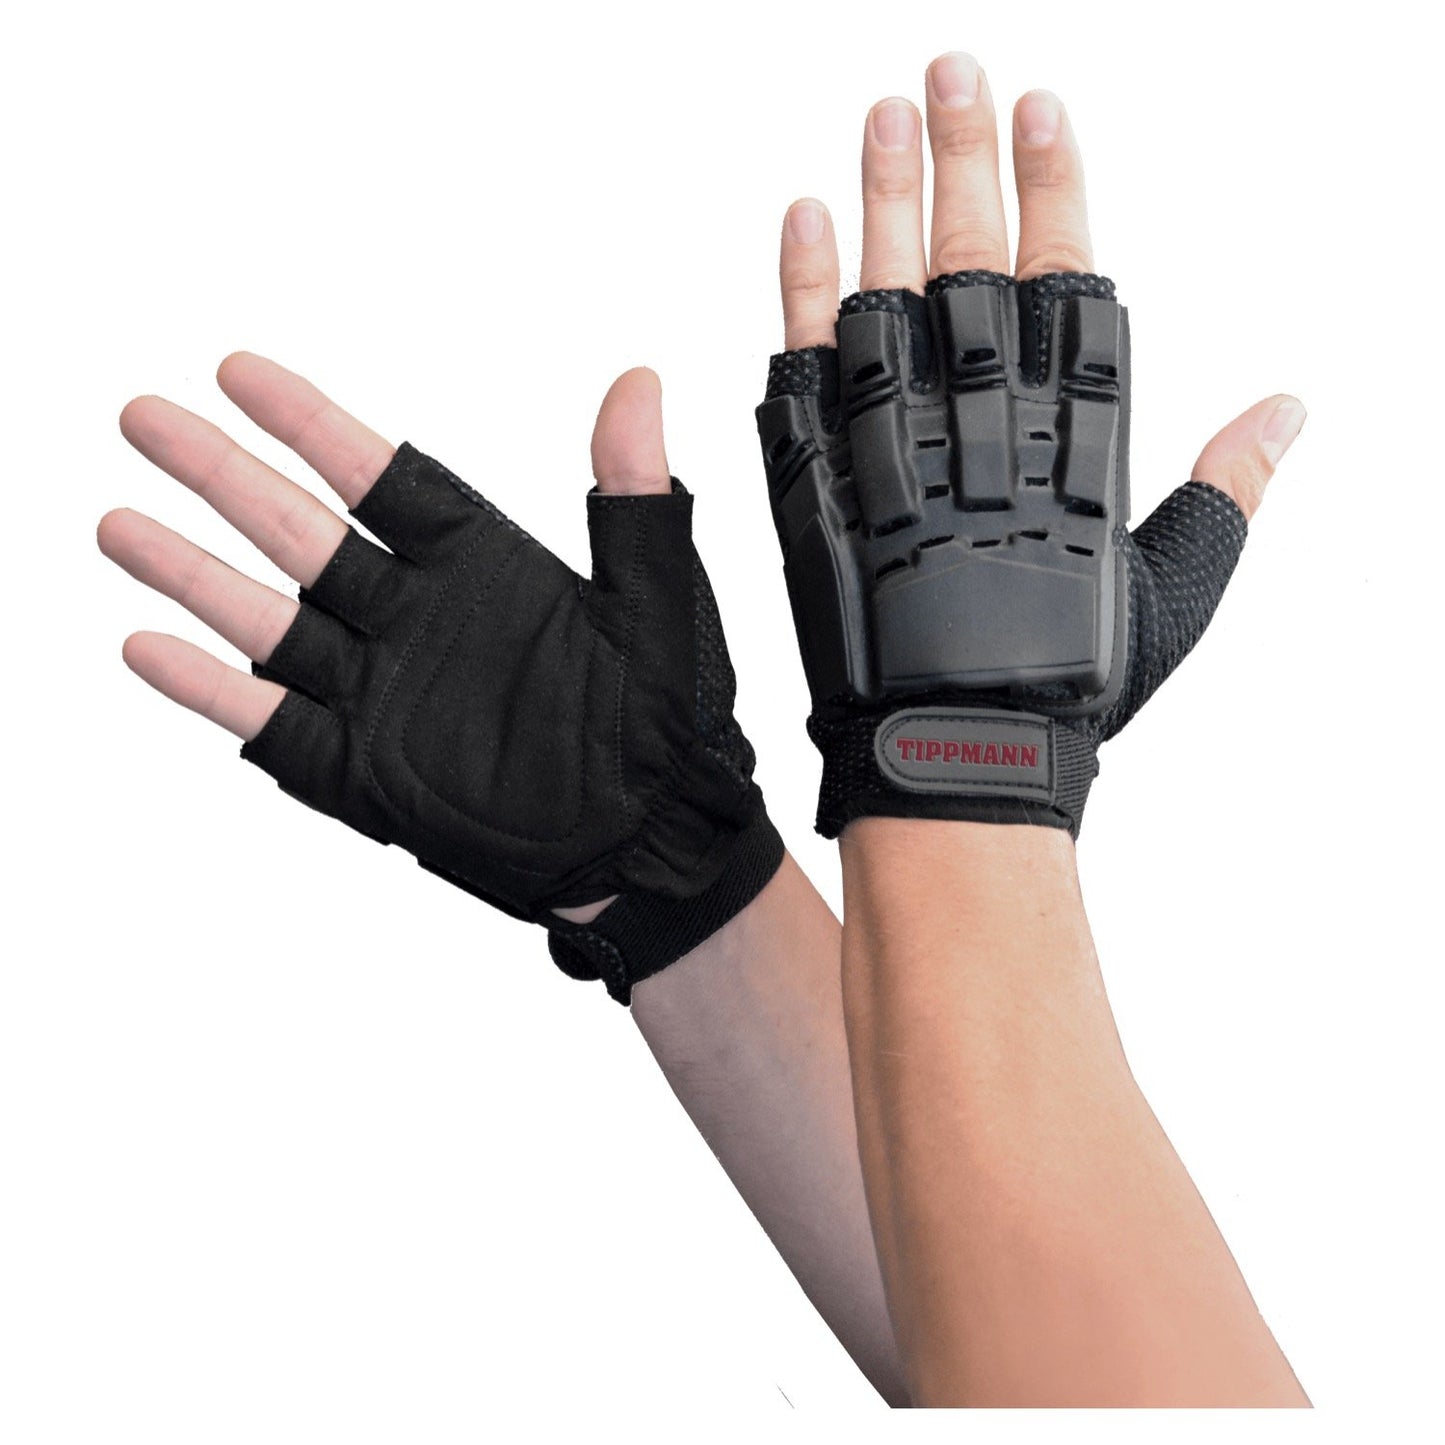 Tippmann Armored Gloves - Half Finger